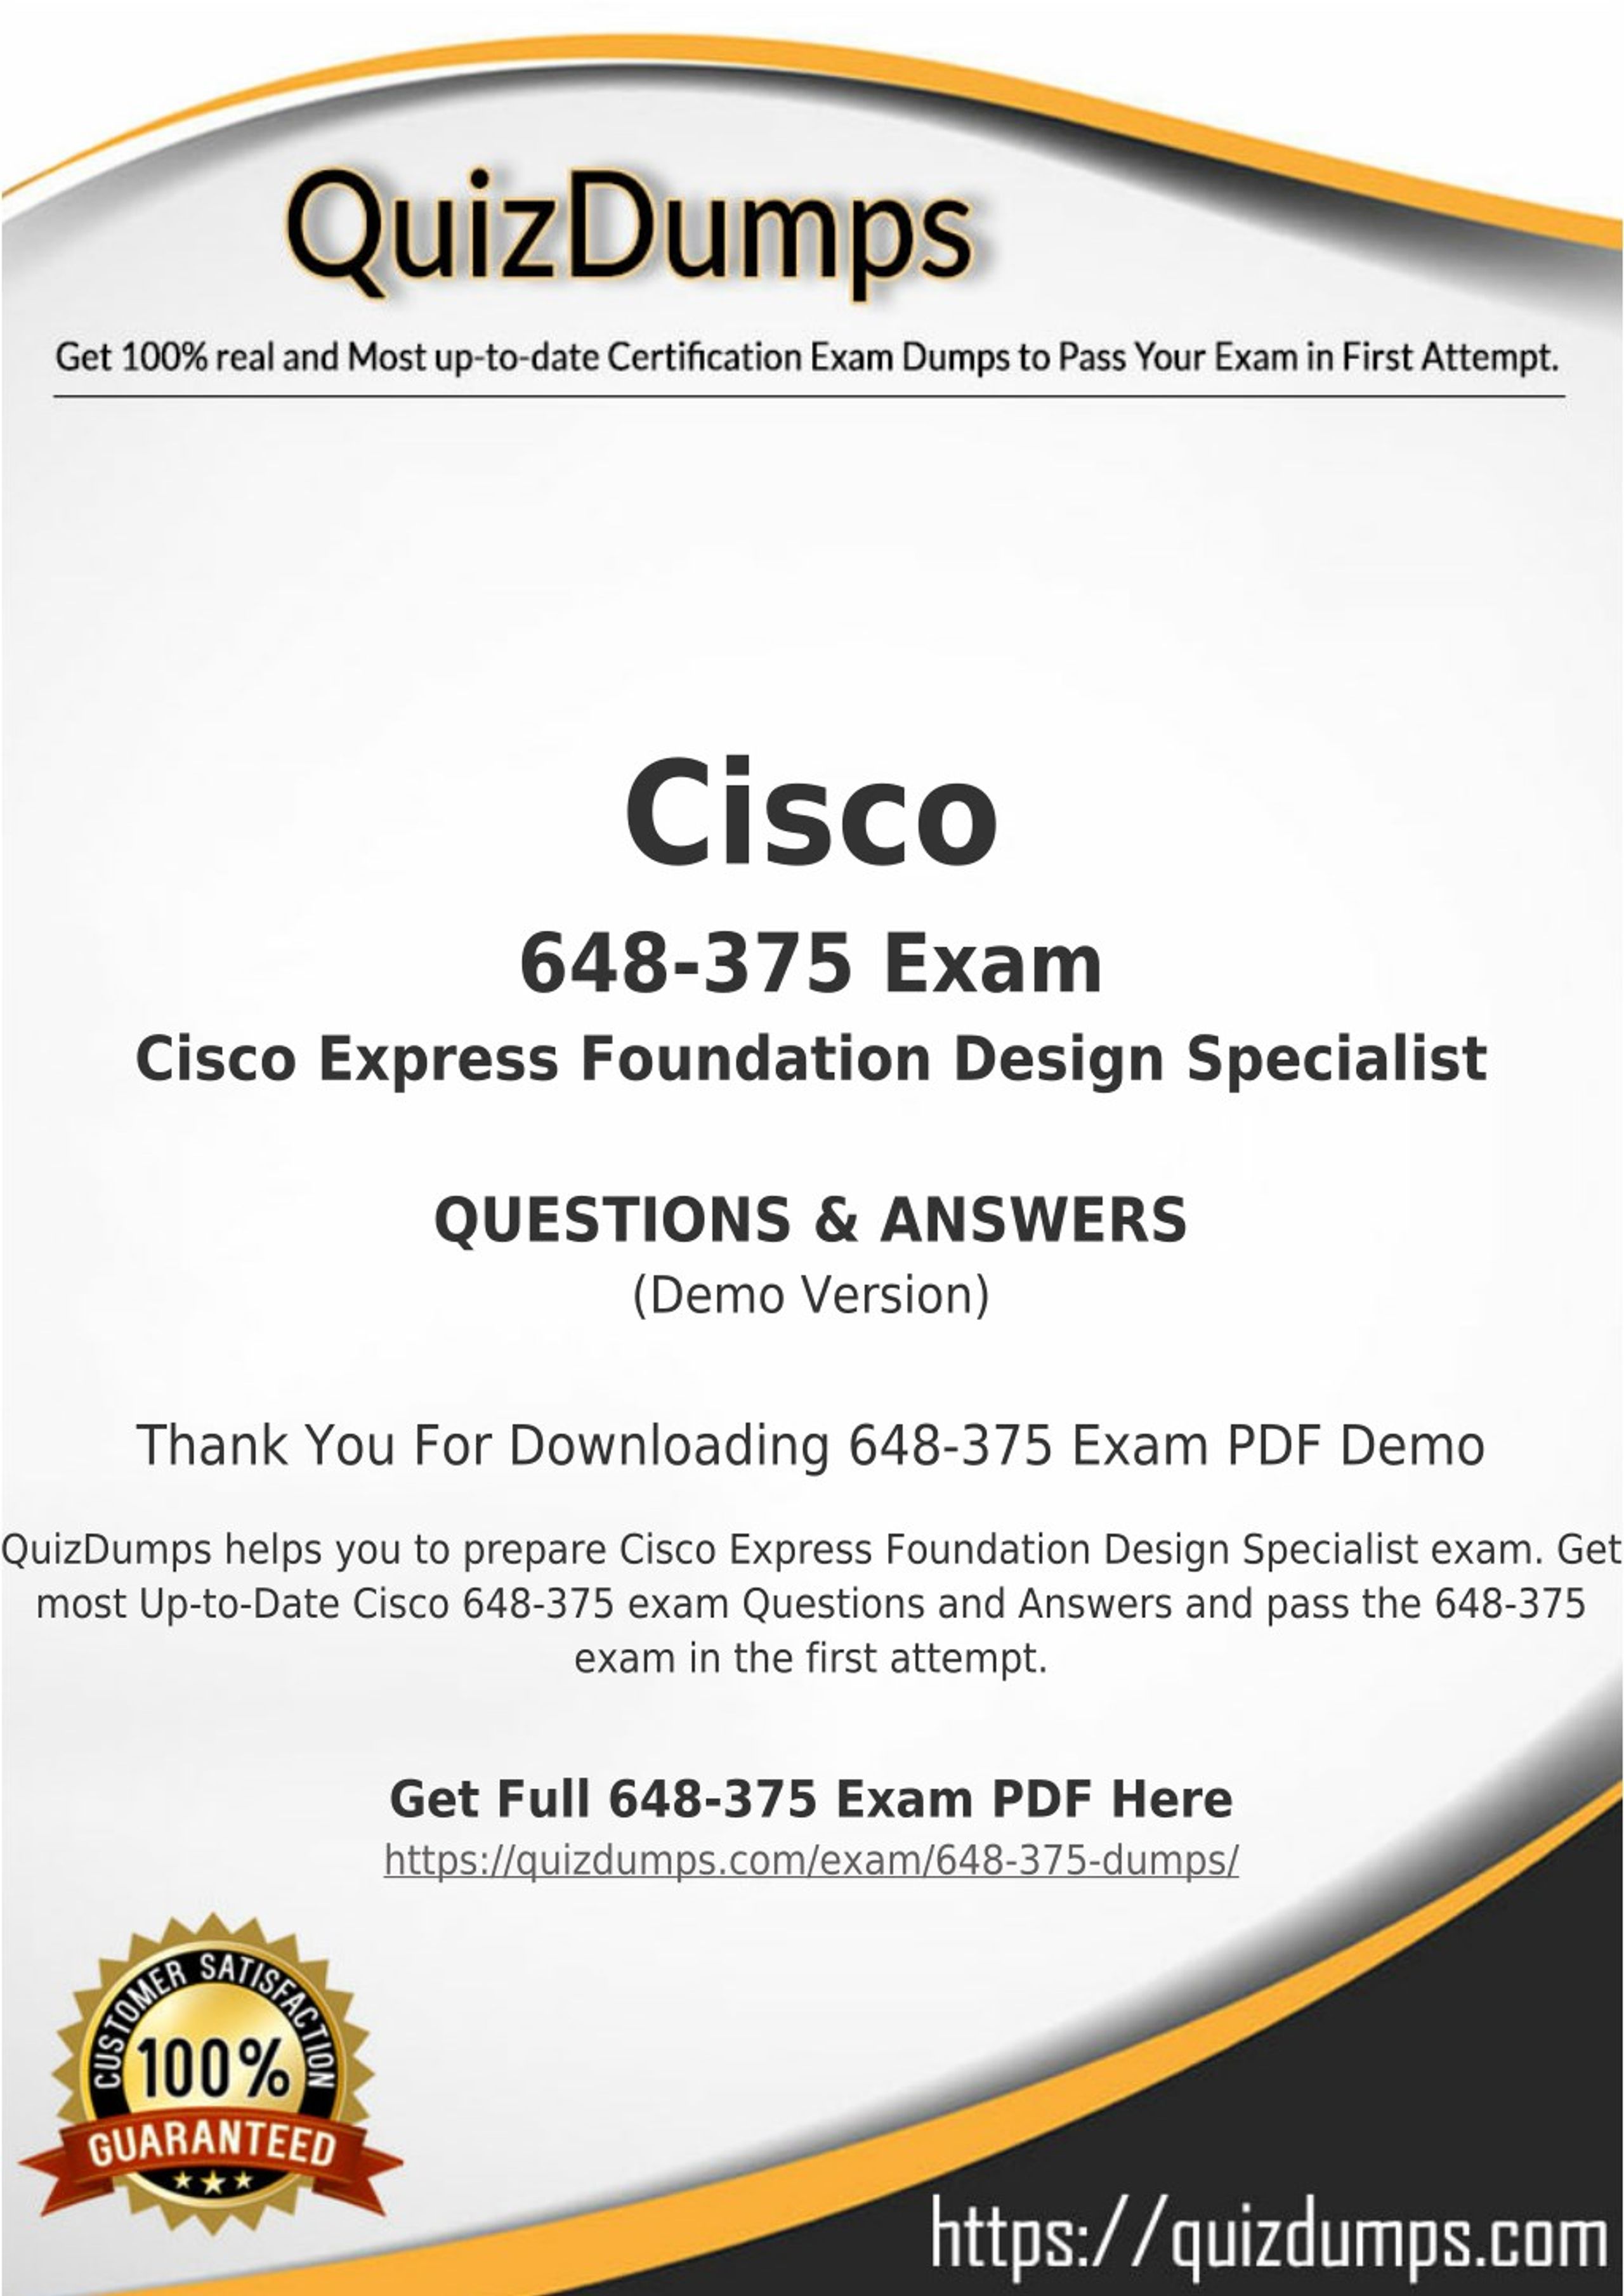 Cisco Best Practice Material For 648-375 Exam Q&A PDF+SIM